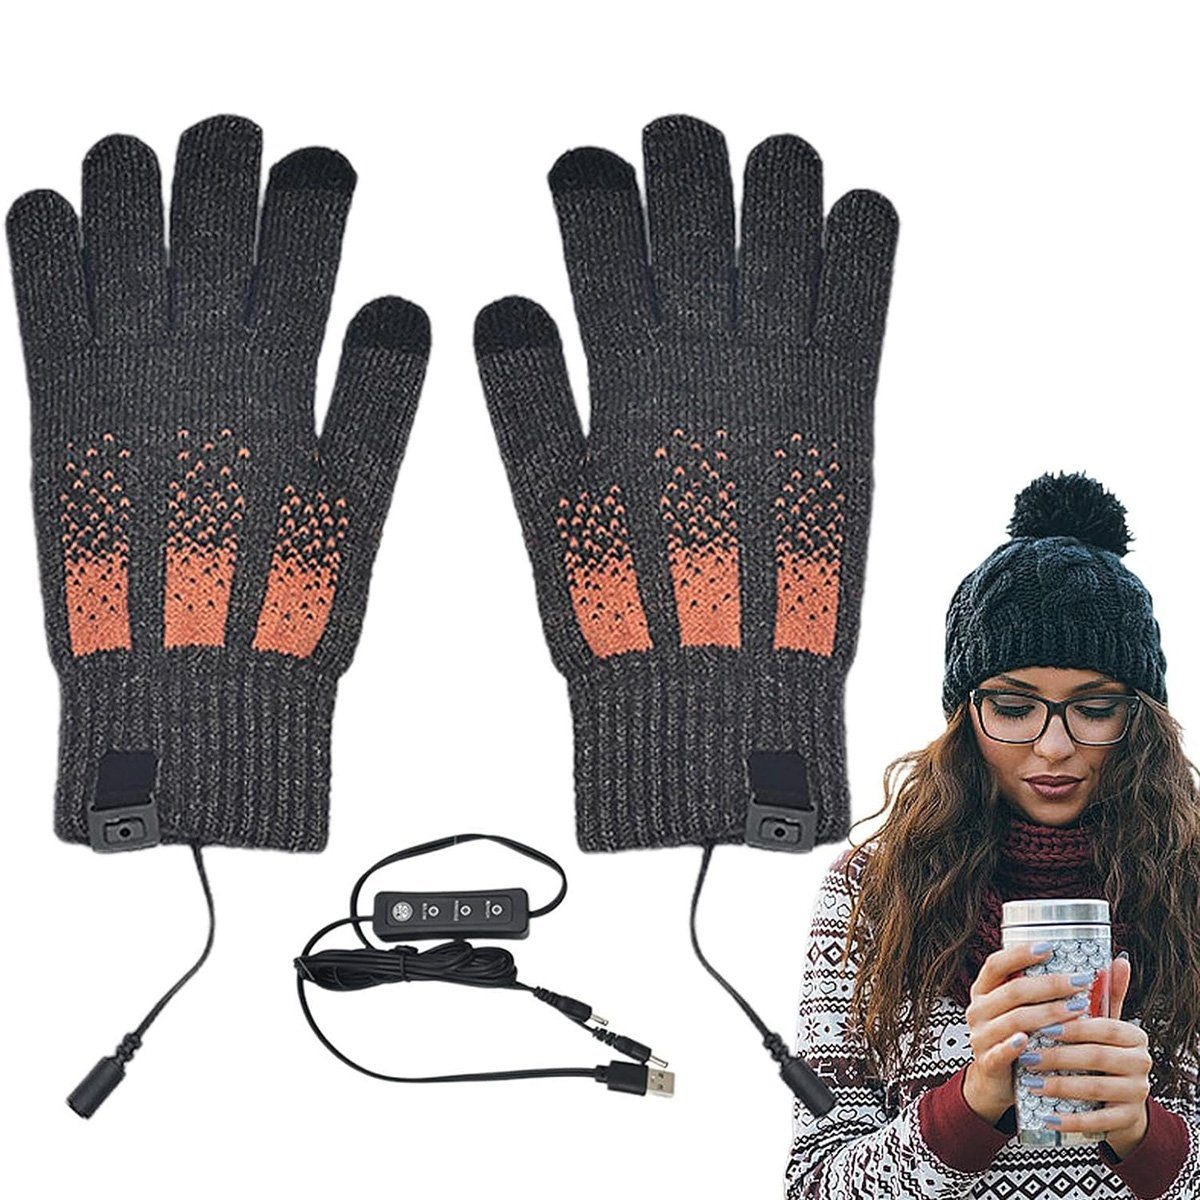 götäzer Skihandschuhe Handschuhe der einstellbaren Temperatur des Touchscreens Einstellbare Temperatur, leitfähiger Gewebe besteht aus Fingerspitzen Grau